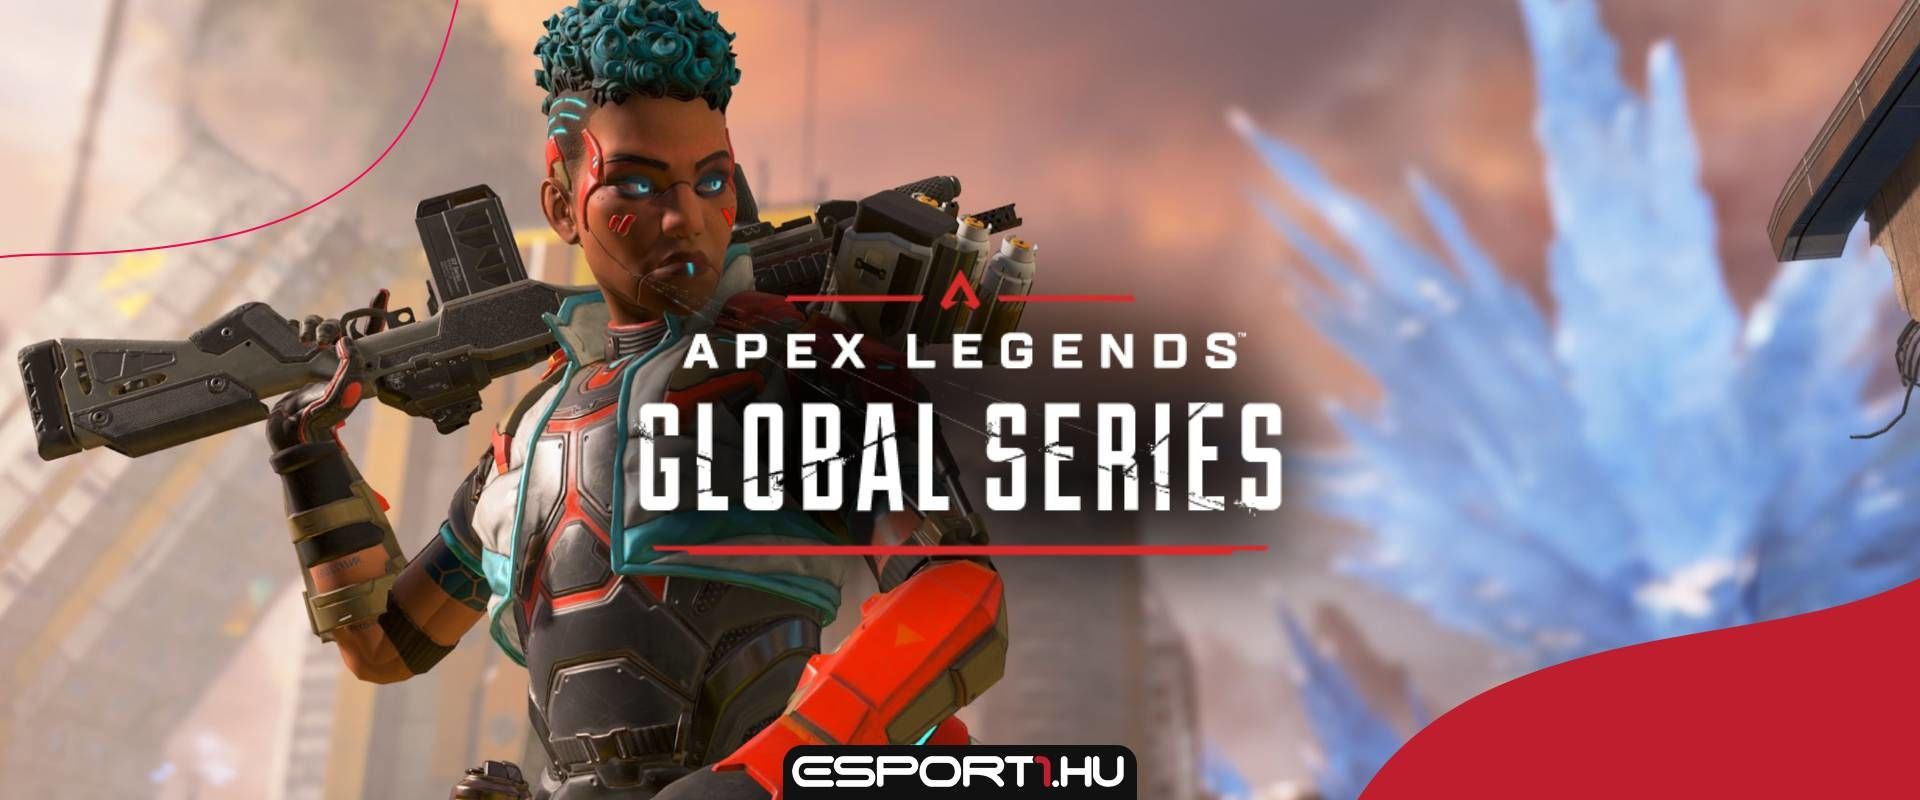 Új információkat osztottak meg a szervezők az Apex Legends Global Series helyzetéről